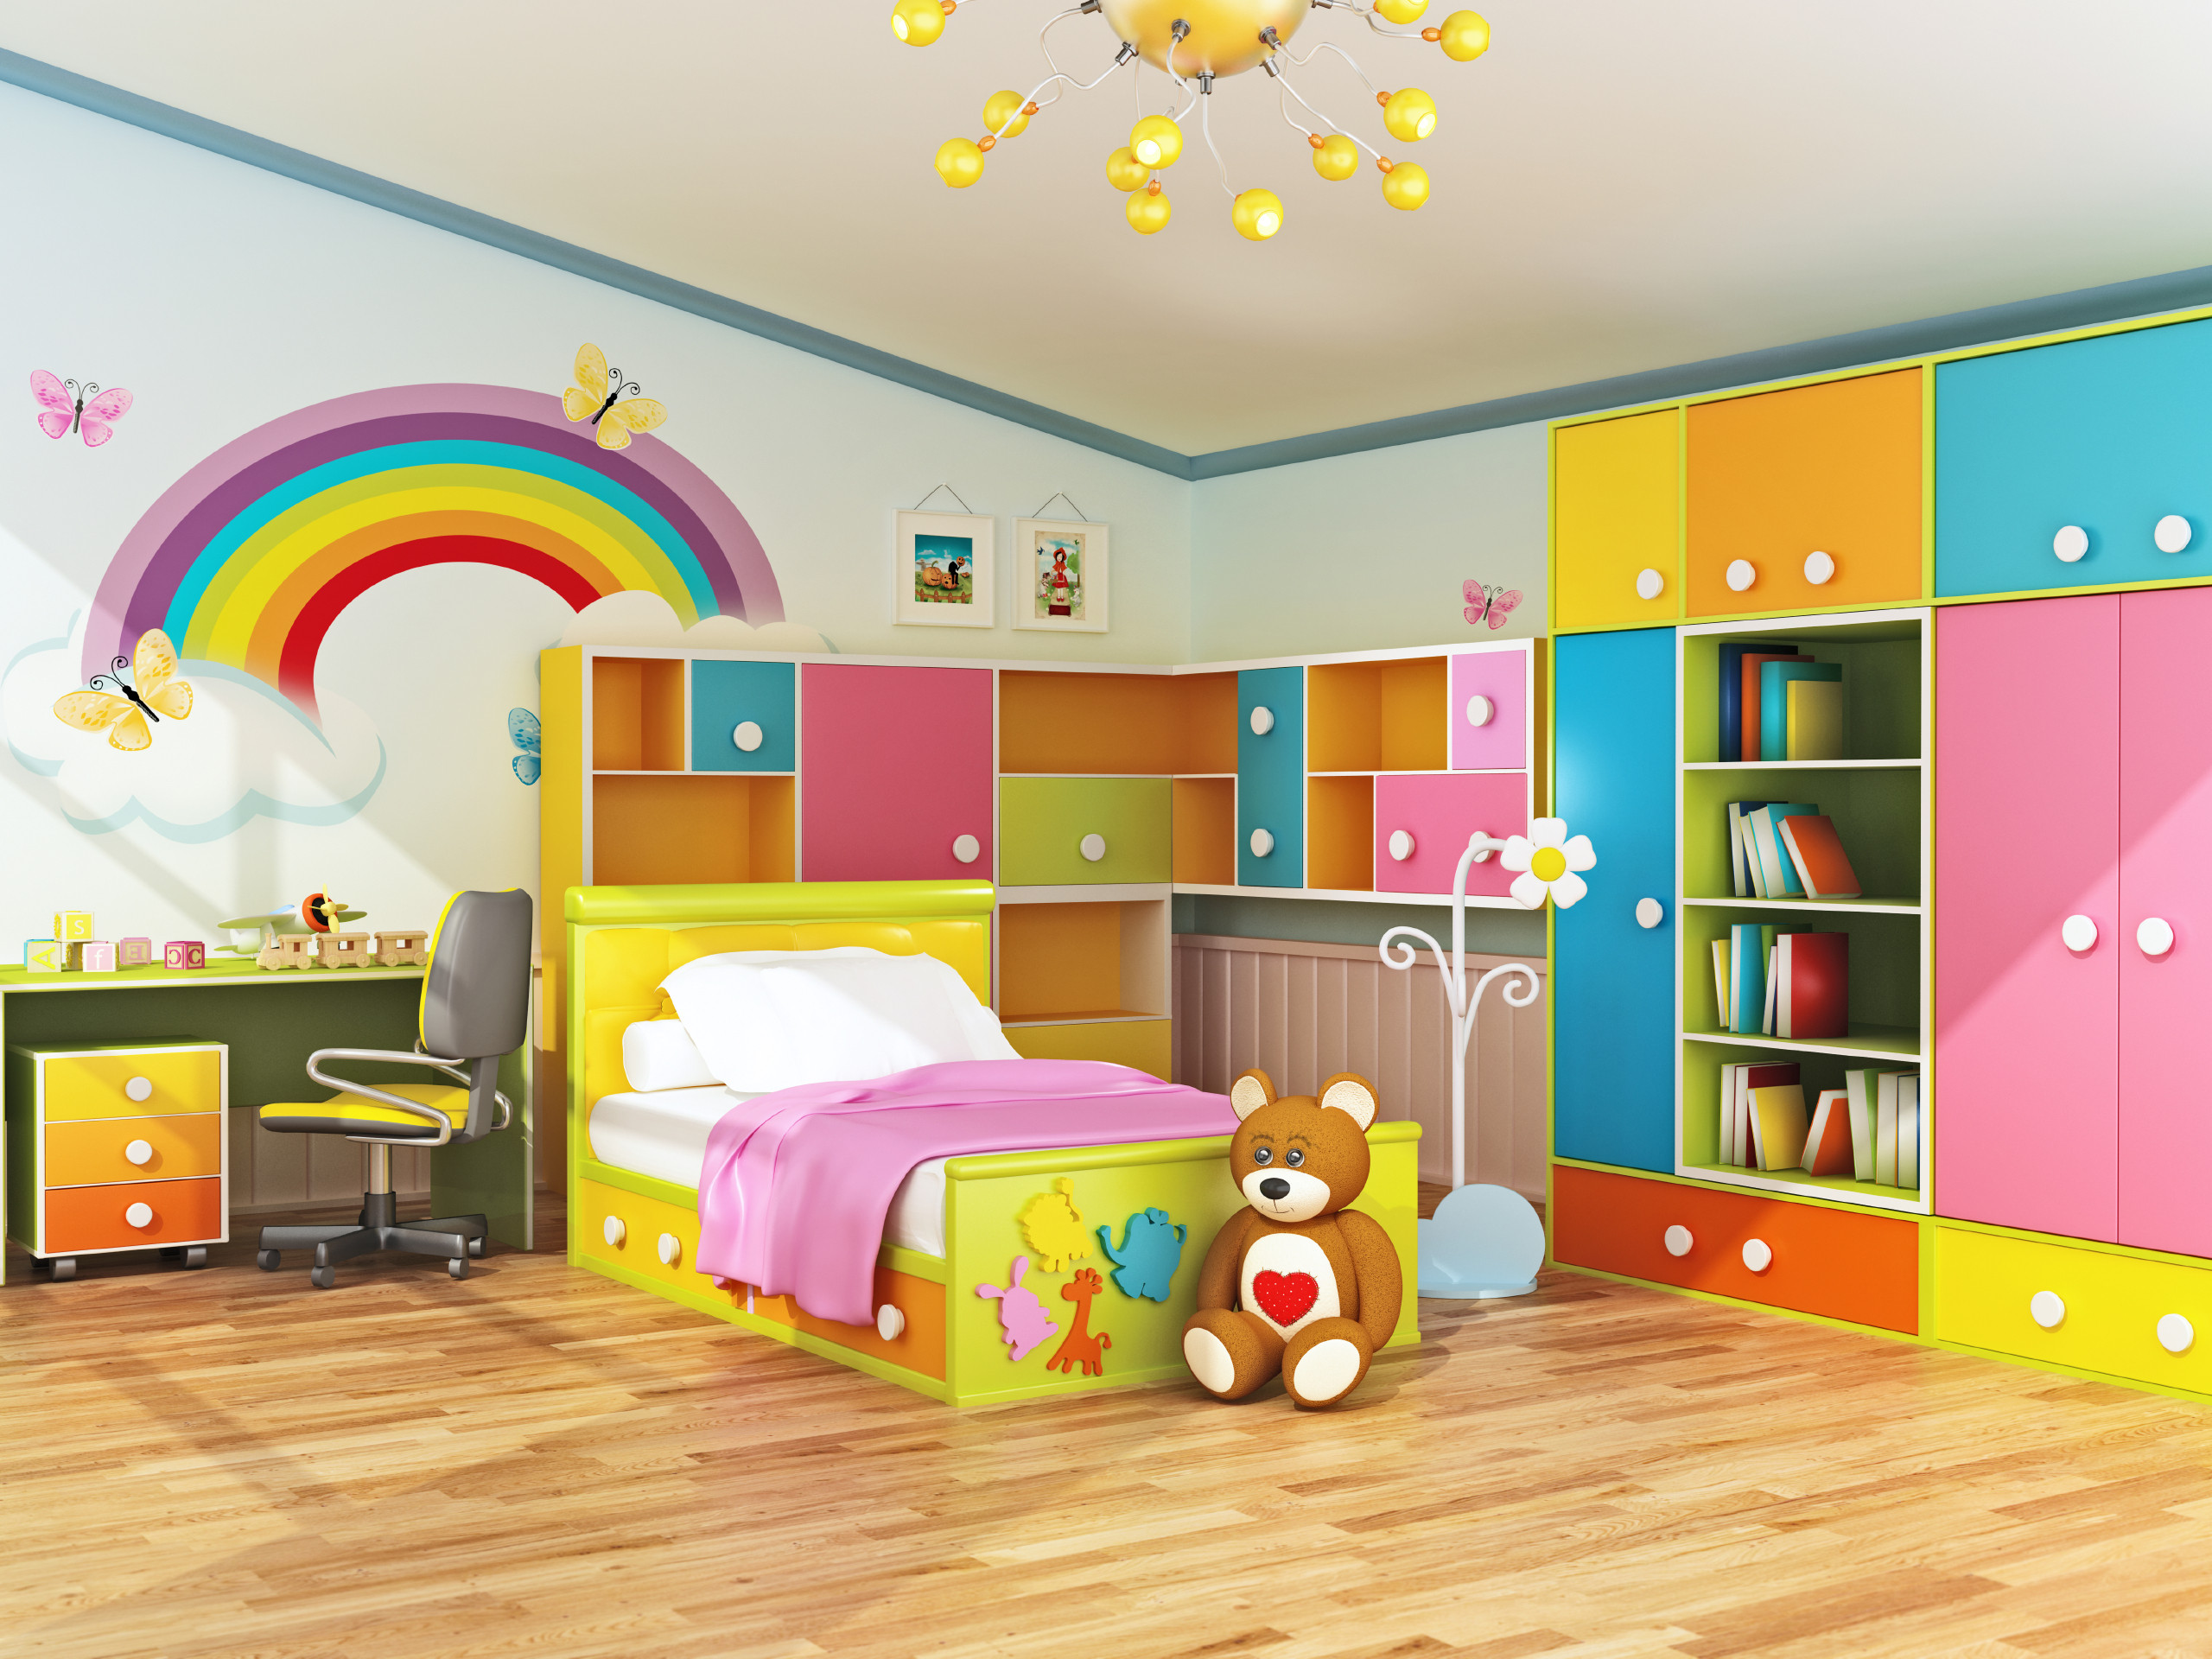 Bedroom Decor Kids
 Plan Ahead When Decorating Kids Bedrooms